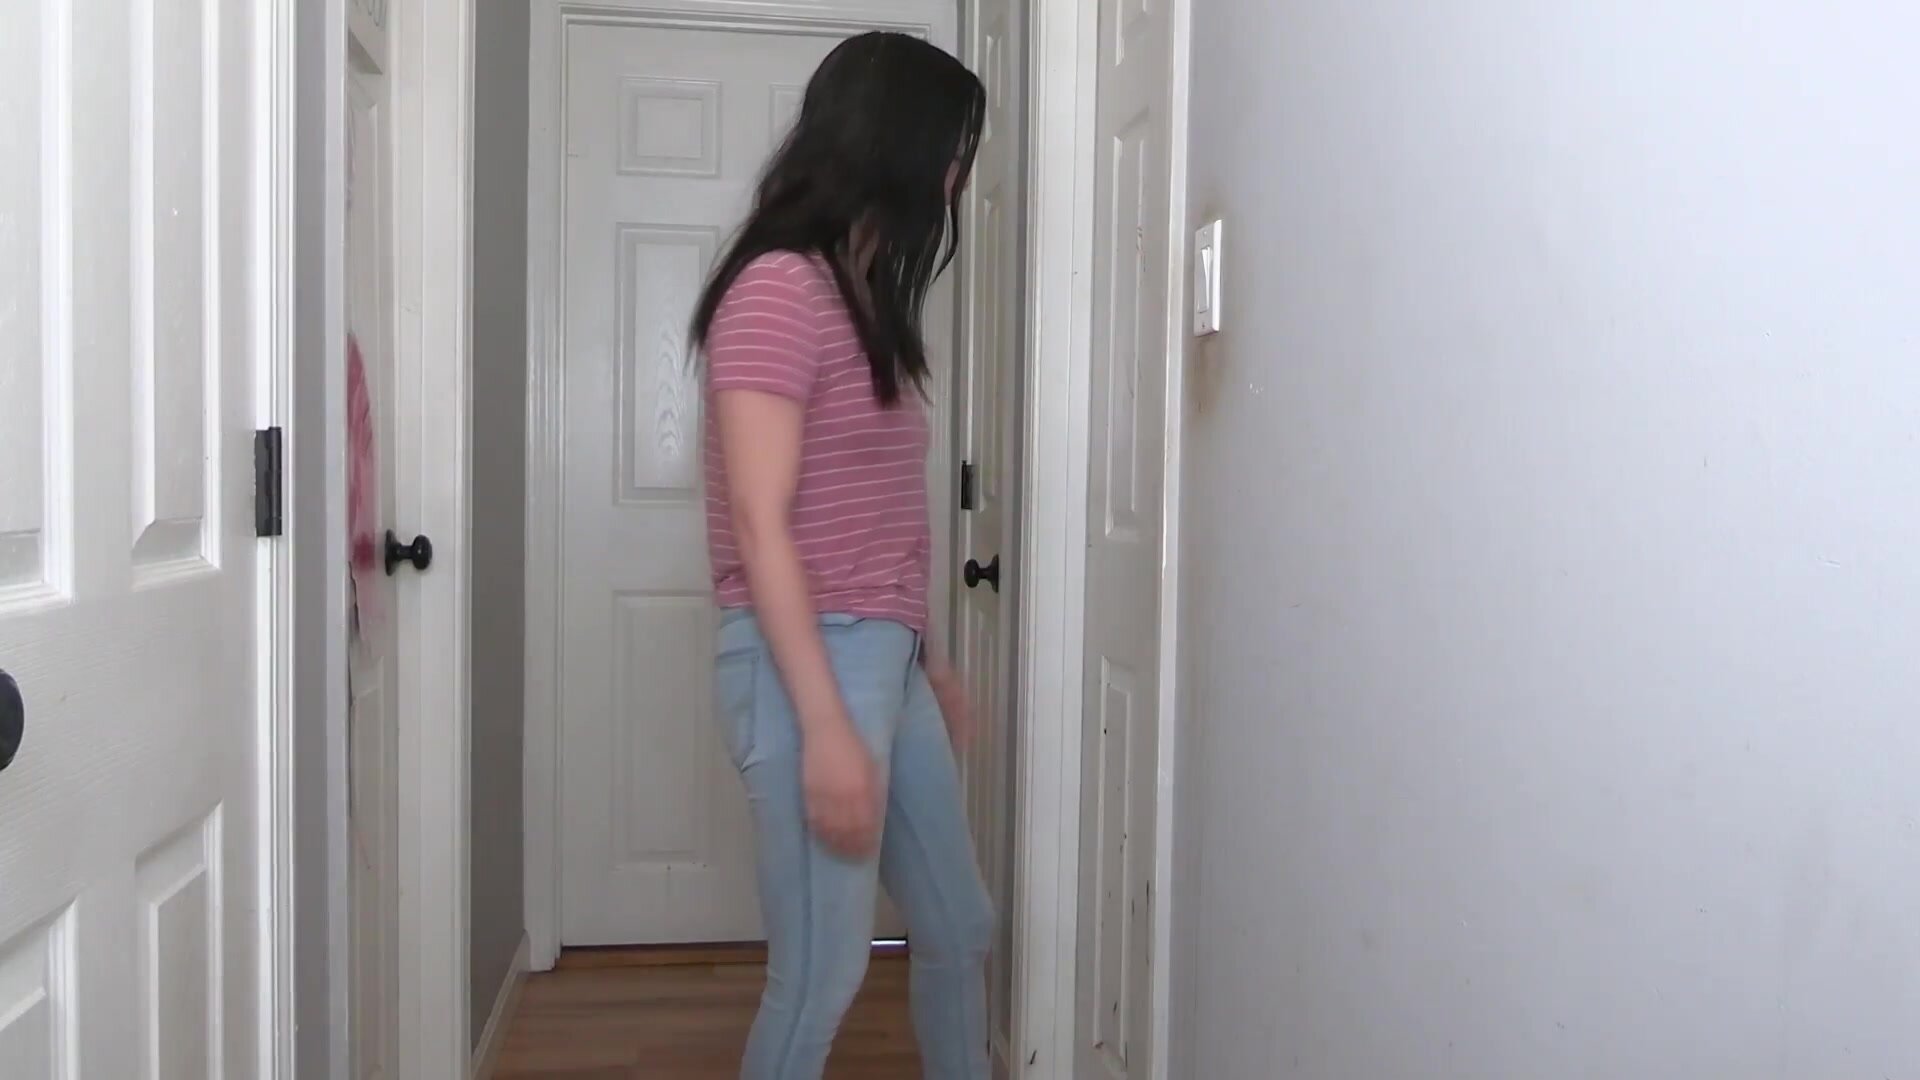 Woman struggles with stuck bathroom door, pees